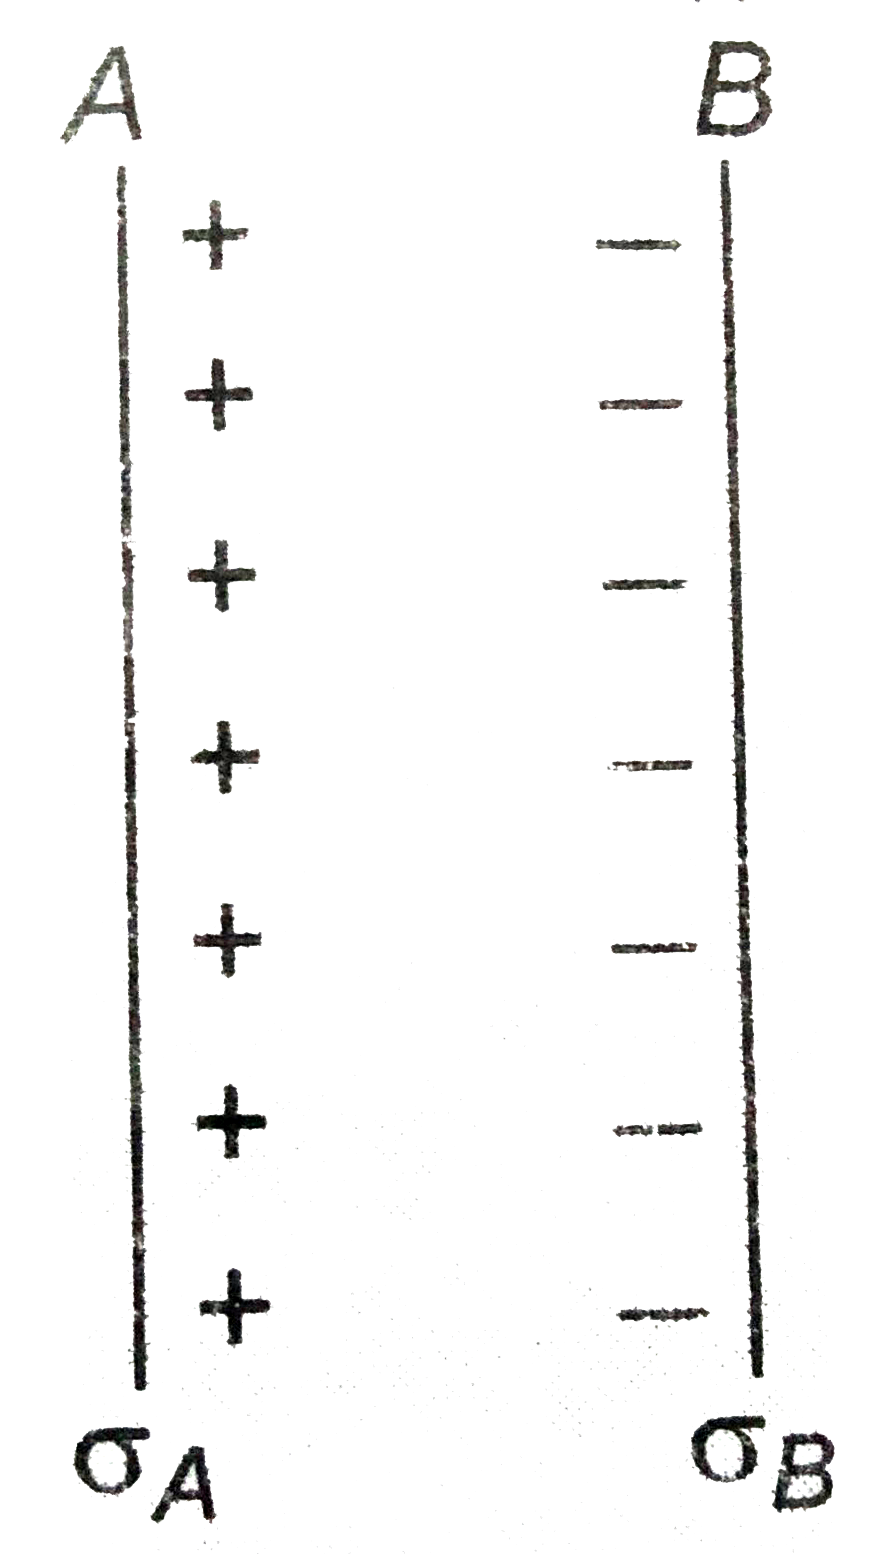 संगलन चित्र में आवेश की दो समतल चादर A तथा B समान्तर राखी है। इनकी भीतरी सतहों पर पृष्ठ आवेश घनत्व sigma(A)=6.8 मिक्रोकुलोम/